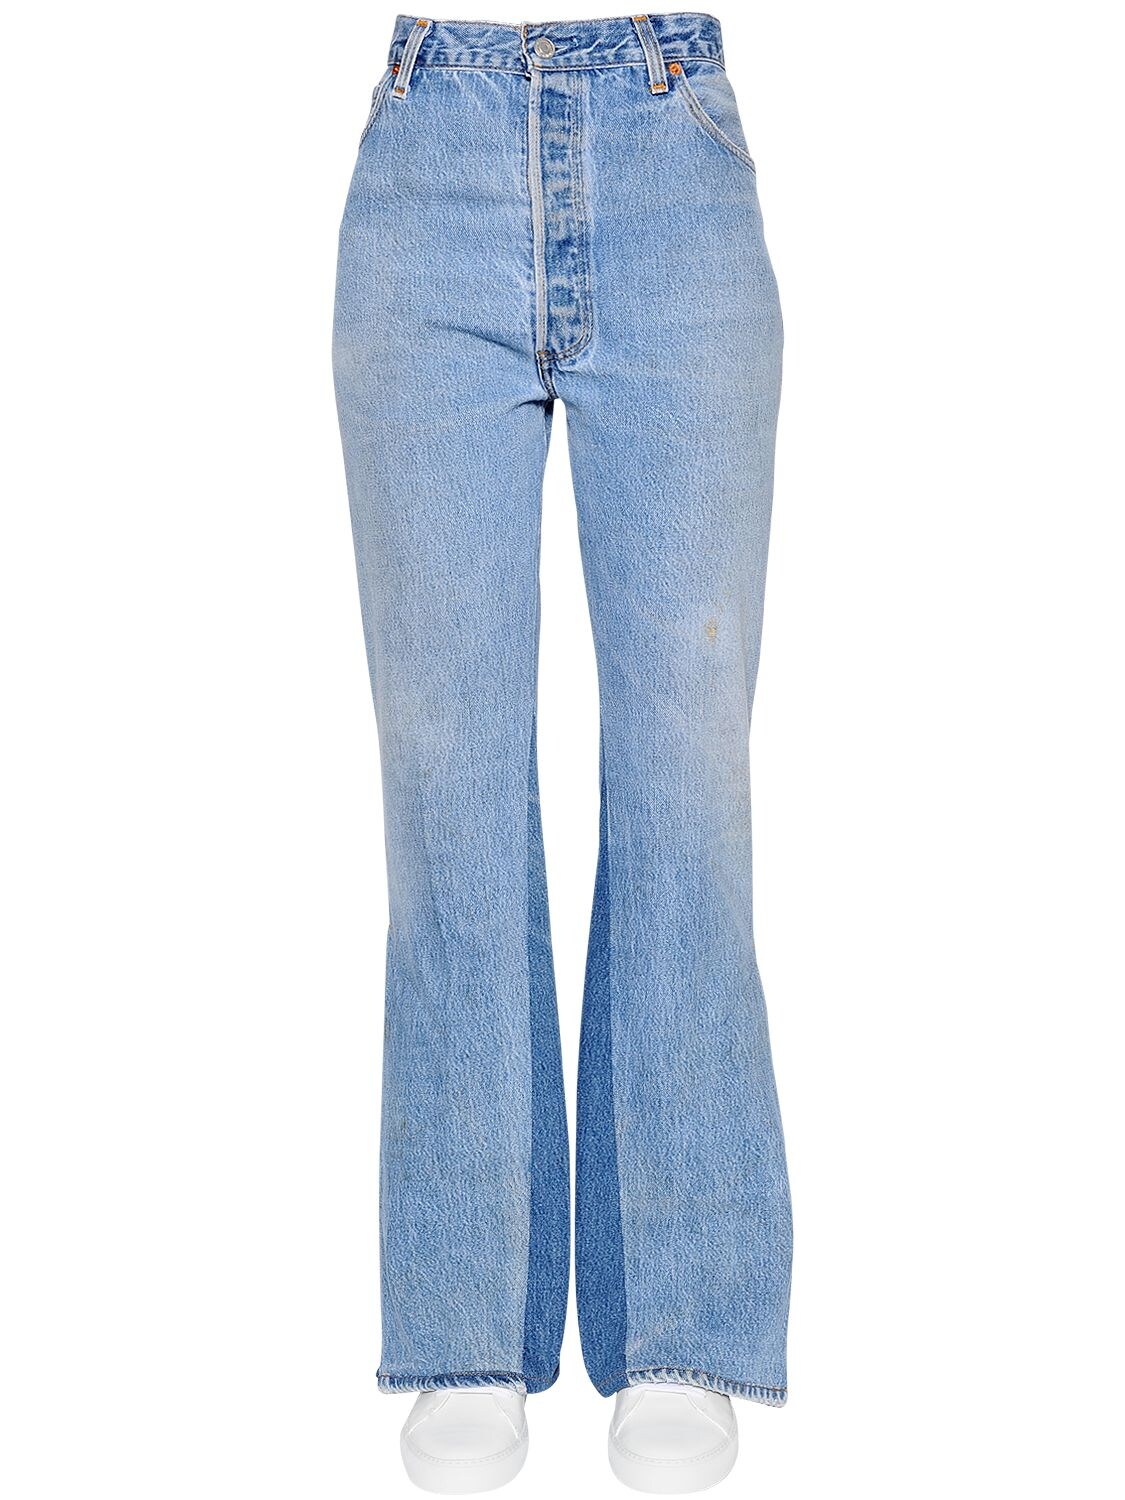 sky blue cotton jeans